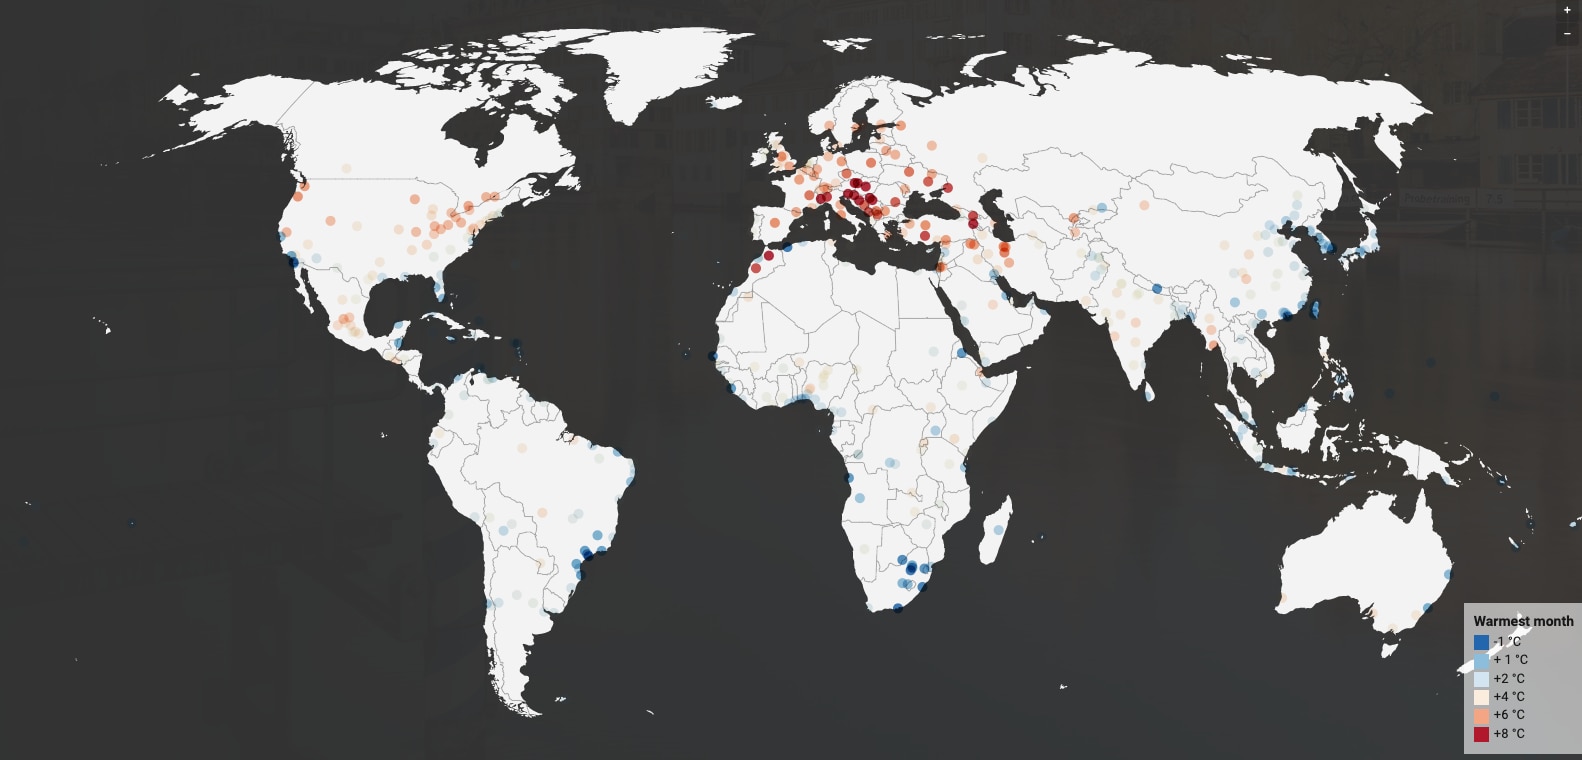 El mapa de los investigadores muestra cuánto aumentará la temperatura en distintas ciudades.